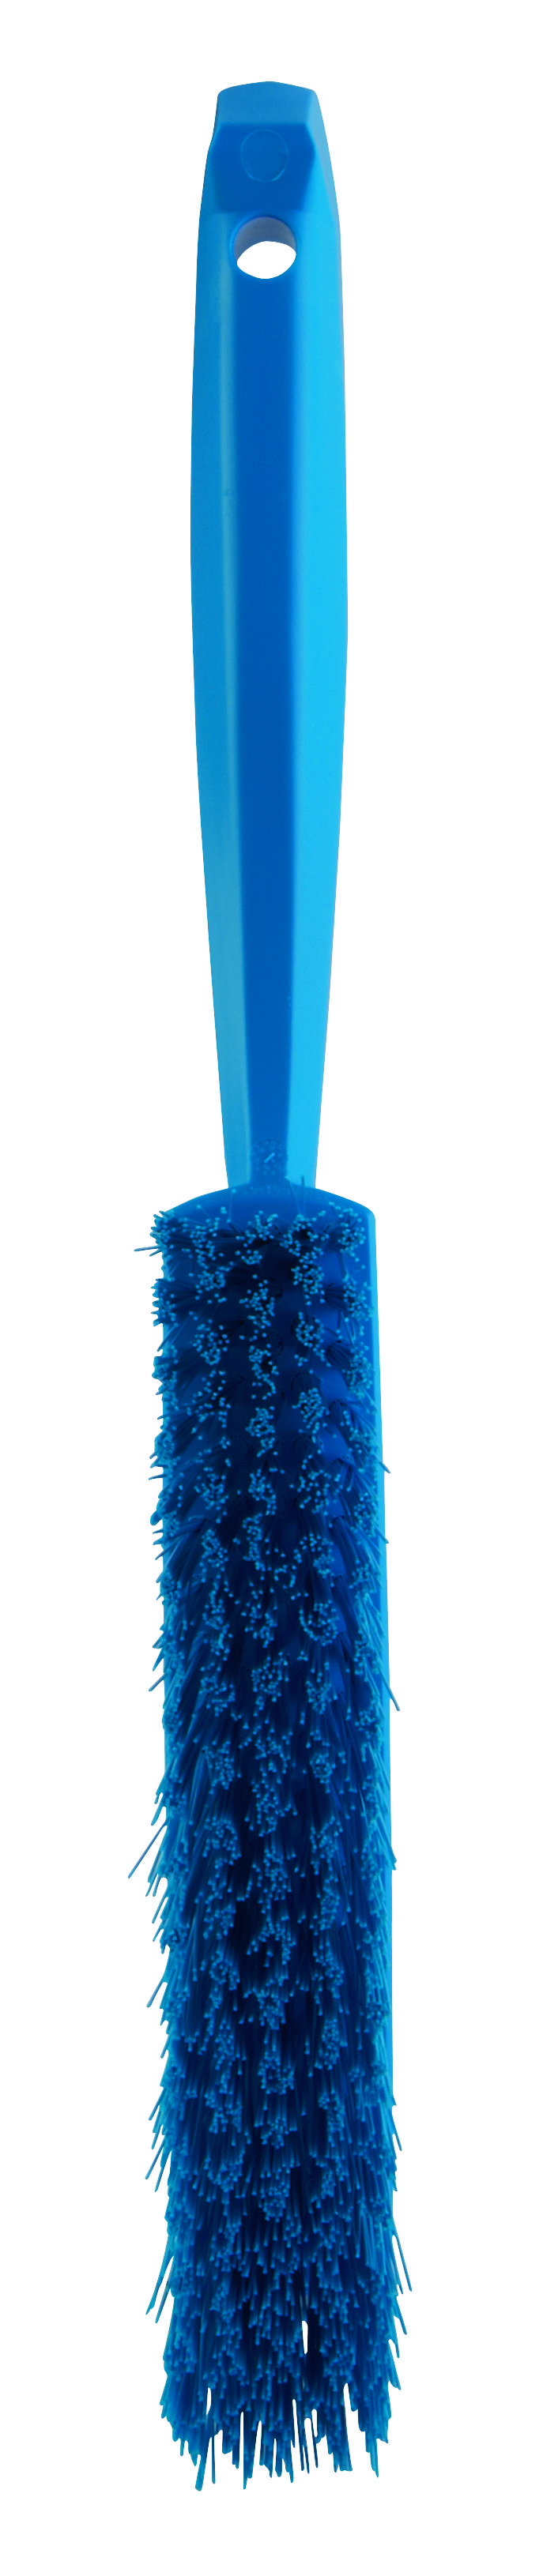 Щетка Vikan ручная средней жесткости, 330 мм, синяя